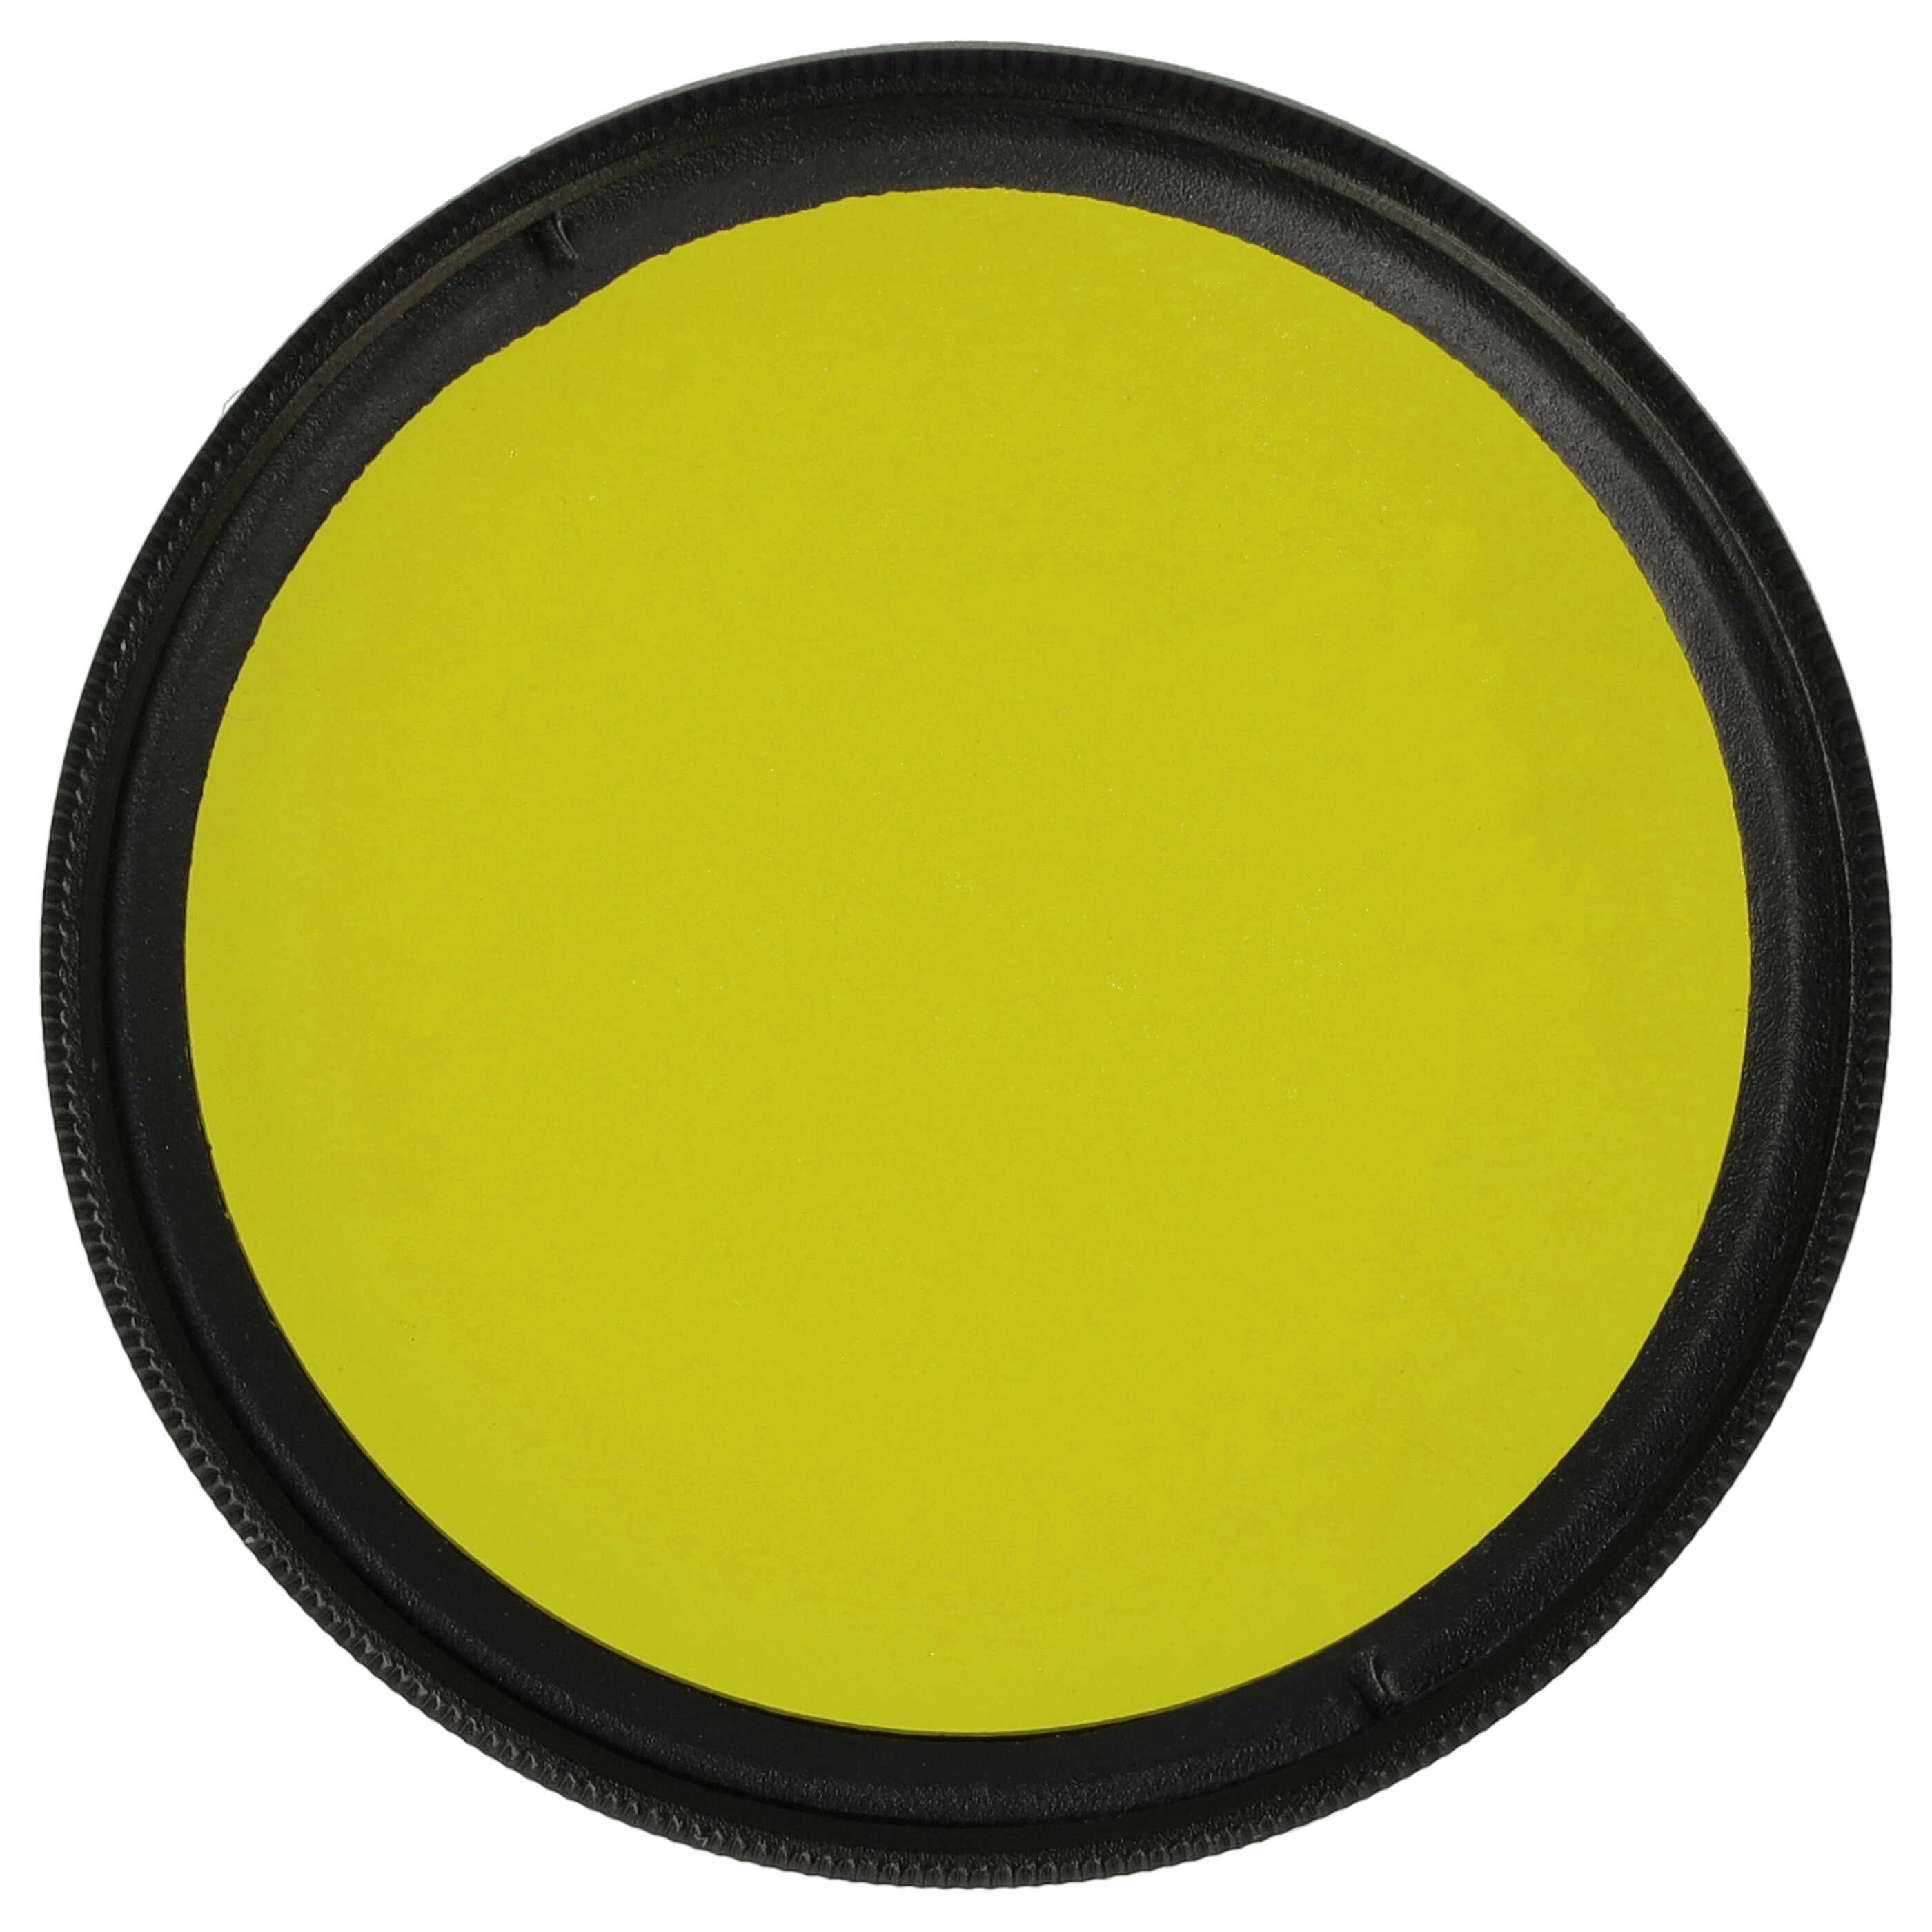 Filtre de couleur jaune pour objectifs d'appareils photo de 46 mm - Filtre jaune